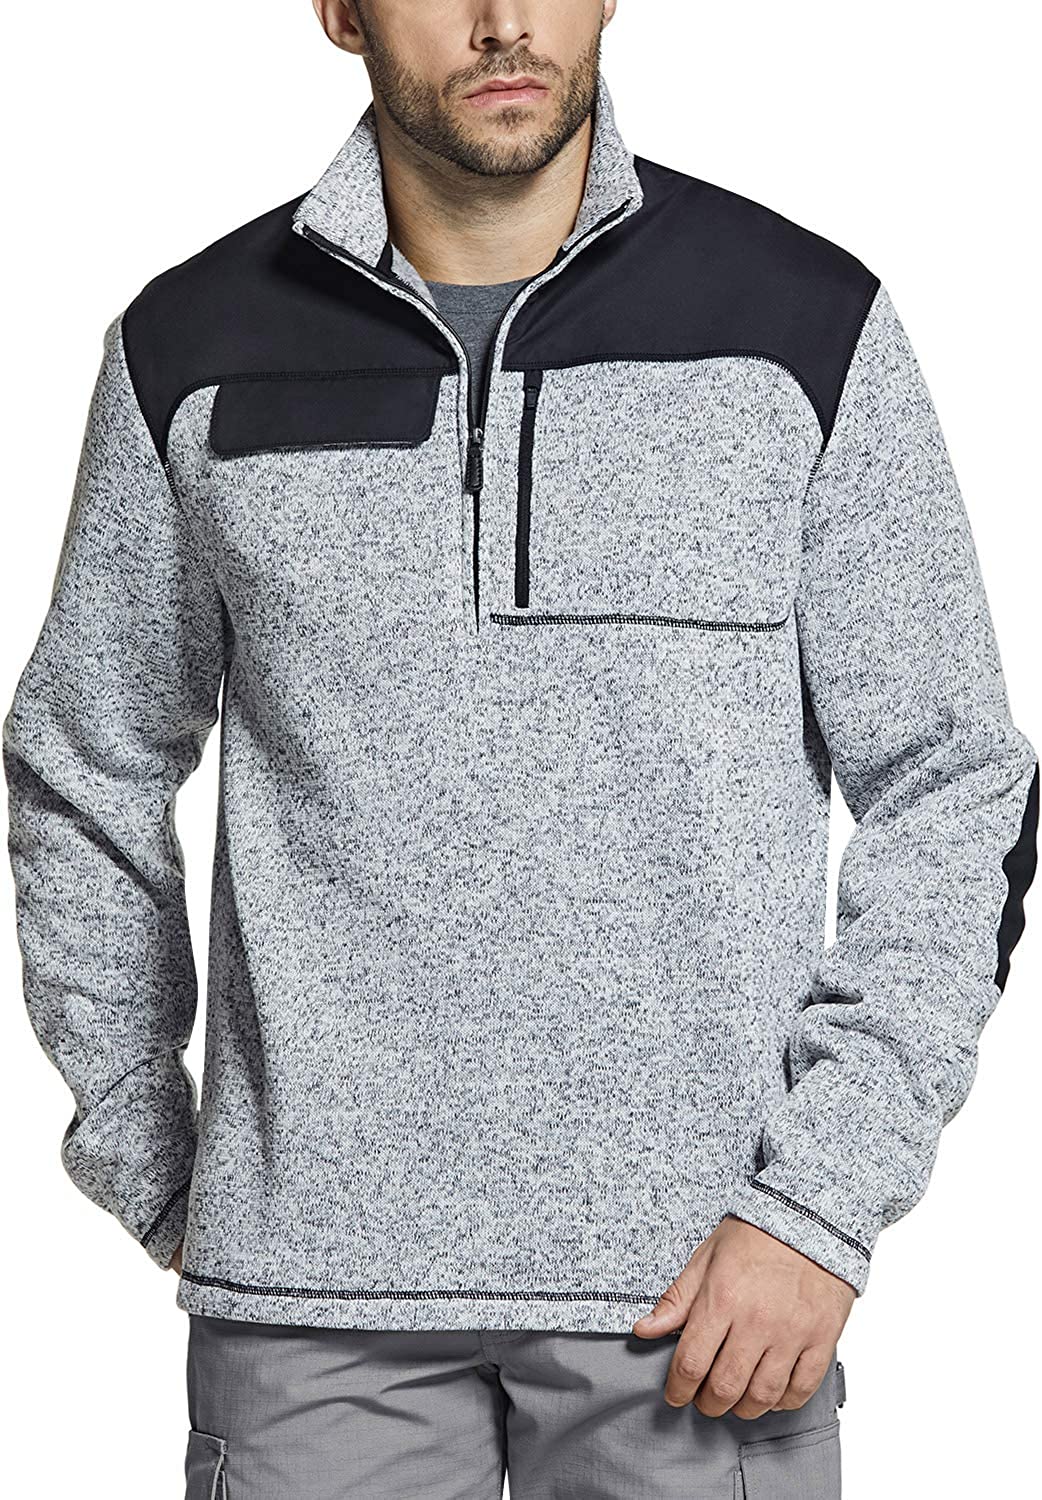 CQR Mens Thermal Fleece Half Zip Pullover Winter Outdoor Warm Sweater Lightweight Long Sleeve Sweatshirt